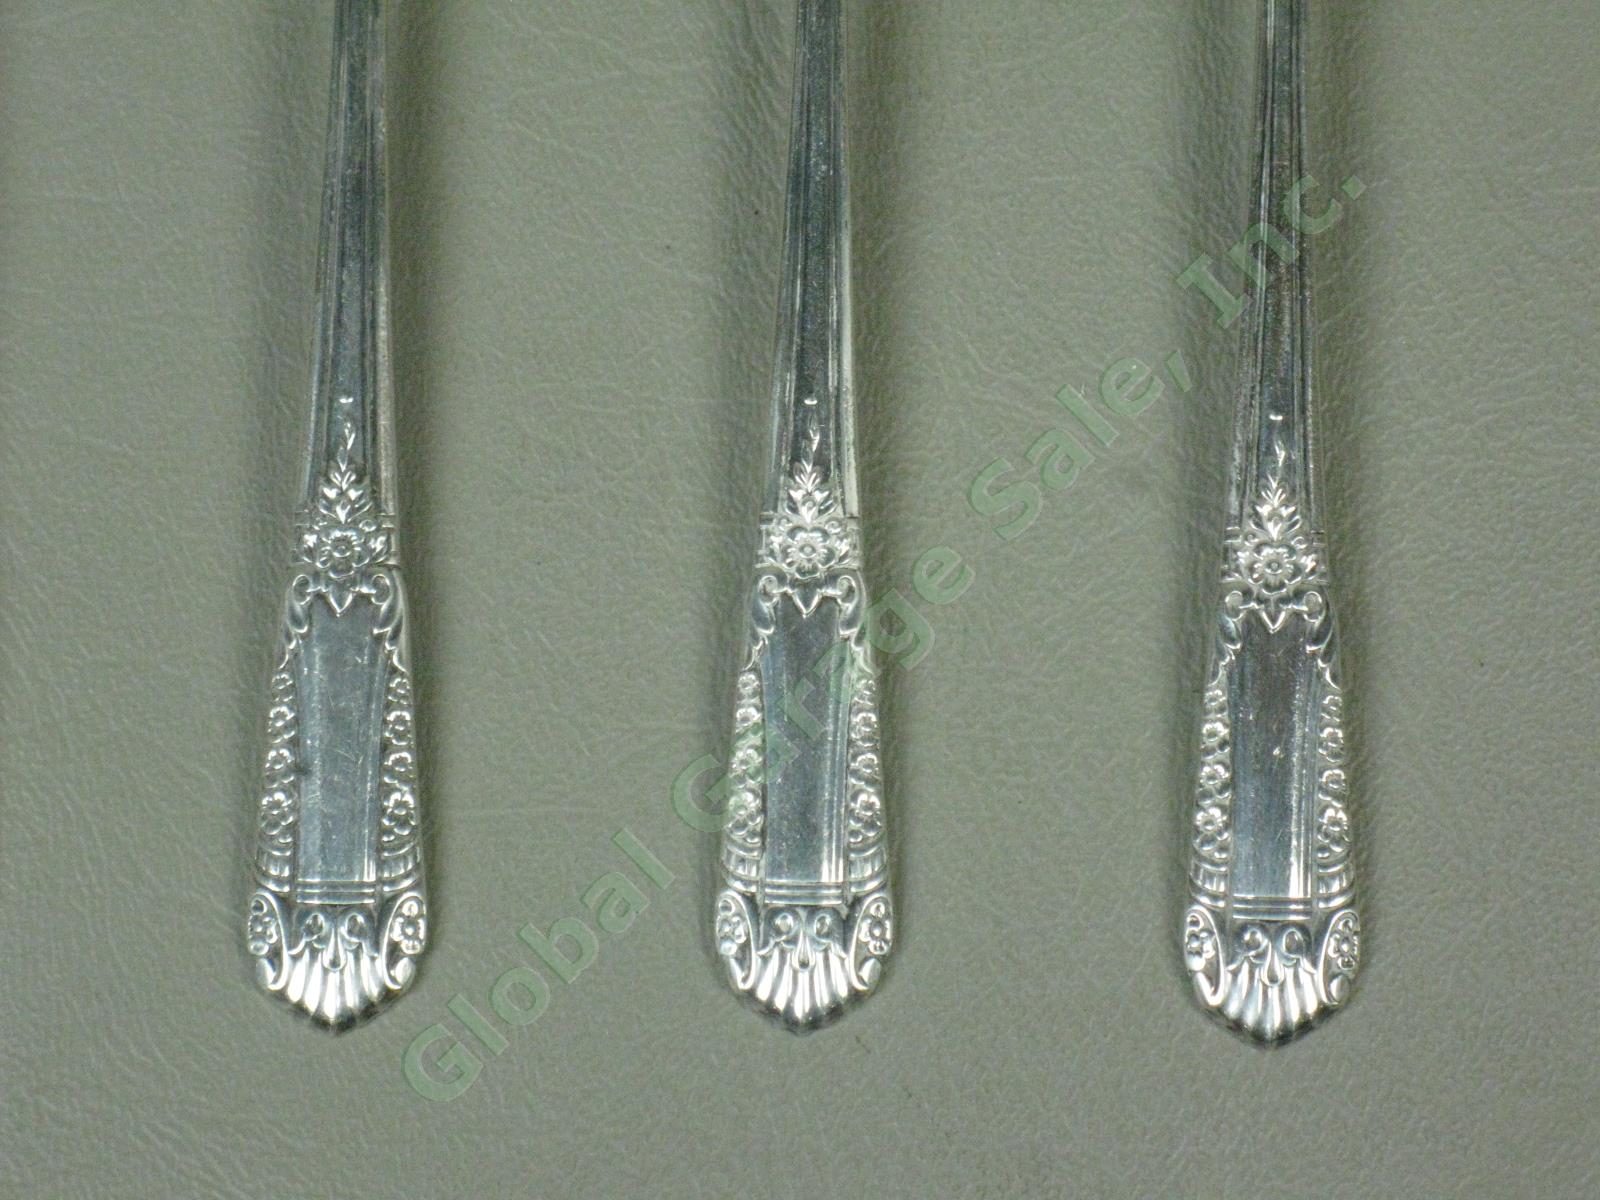 7 State House Inaugural Sterling Silver Teaspoons Spoons Silverware Set 232 Gram 2